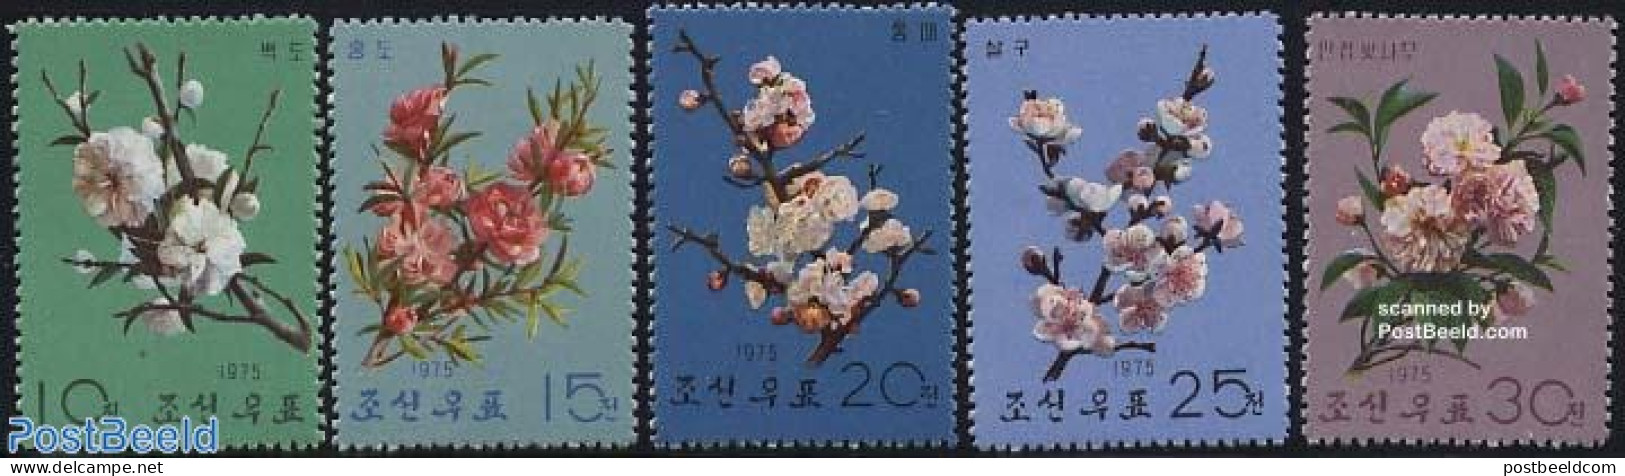 Korea, North 1975 Tree Flowers 5v, Mint NH, Nature - Flowers & Plants - Korea, North